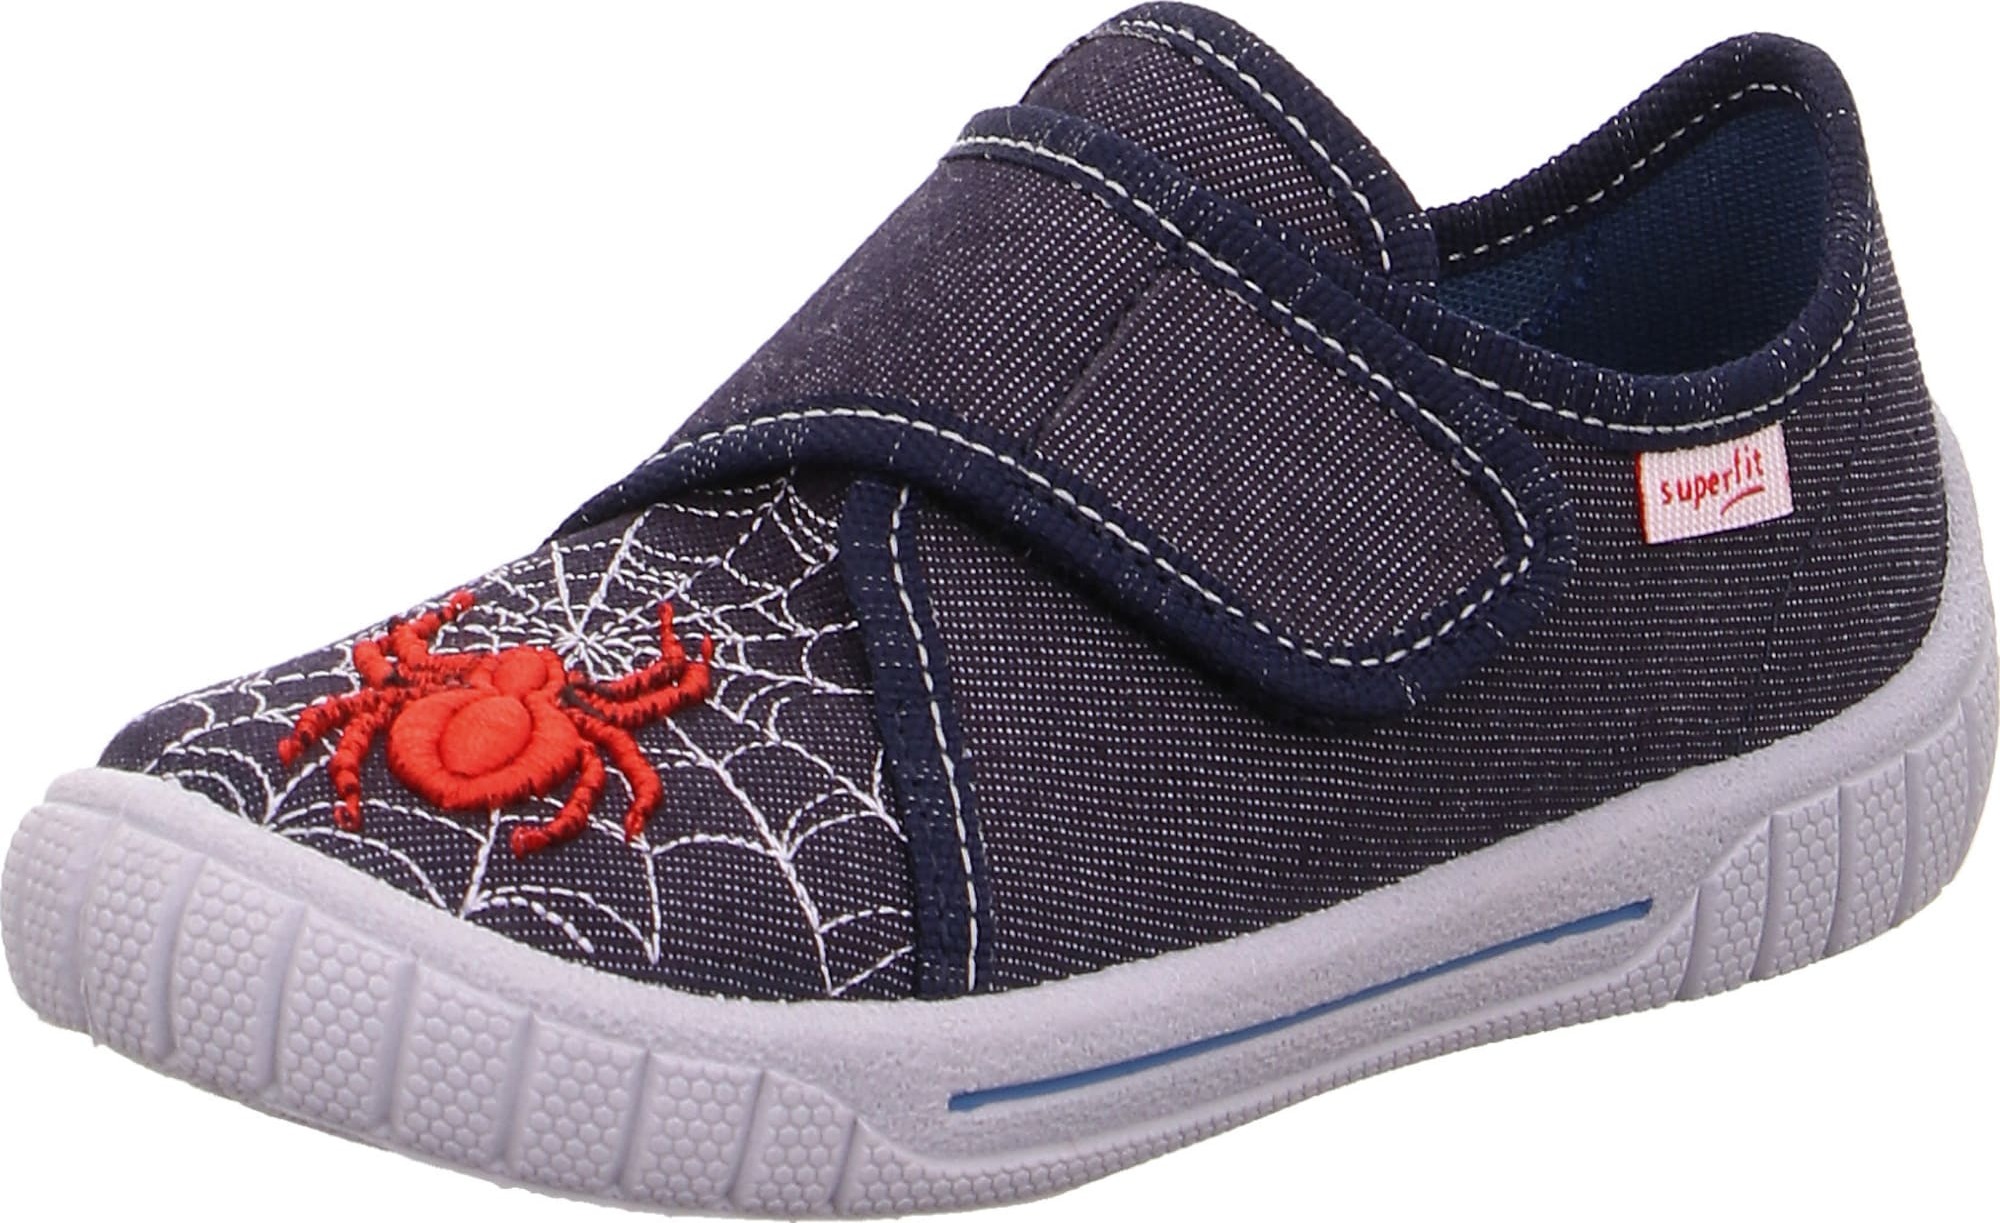 Pantofle 'BILL' Superfit modrá